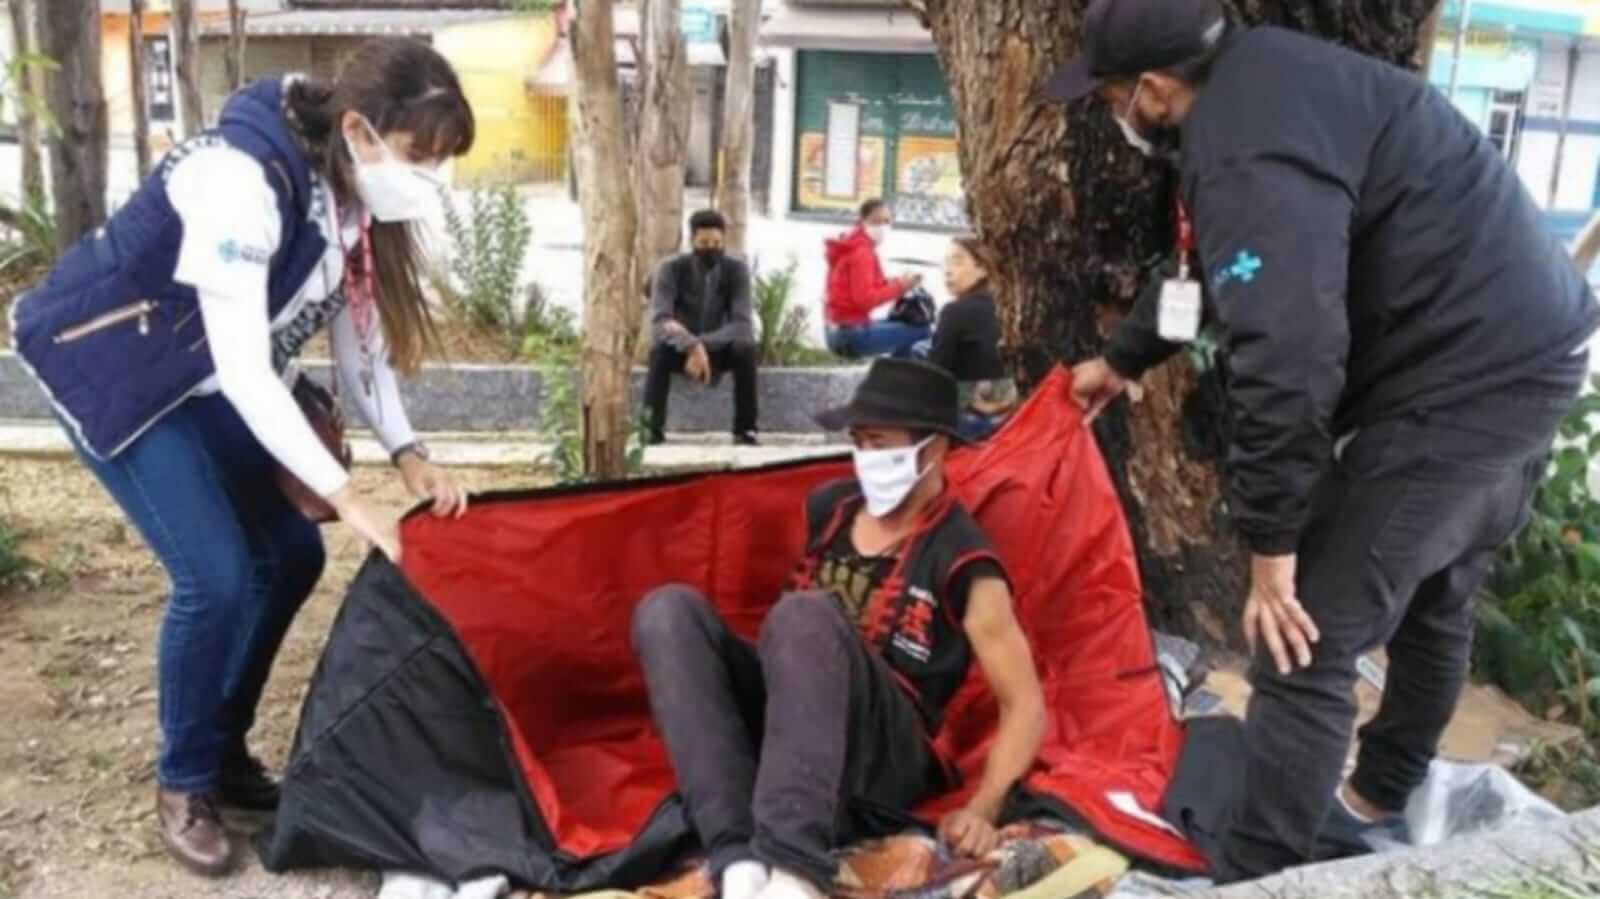 Voluntários de projeto social doando saco de dormir para homem em situação de rua